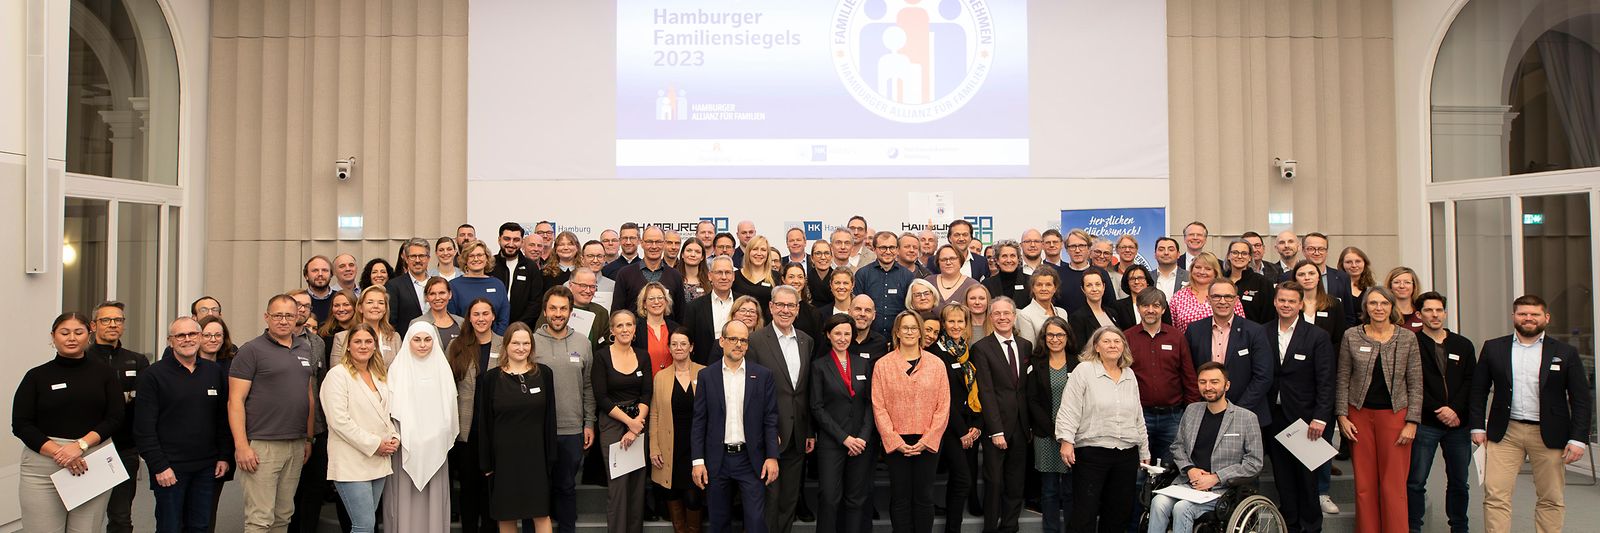 Gruppenfoto von der Verleihung des Hamburger Familiensiegels